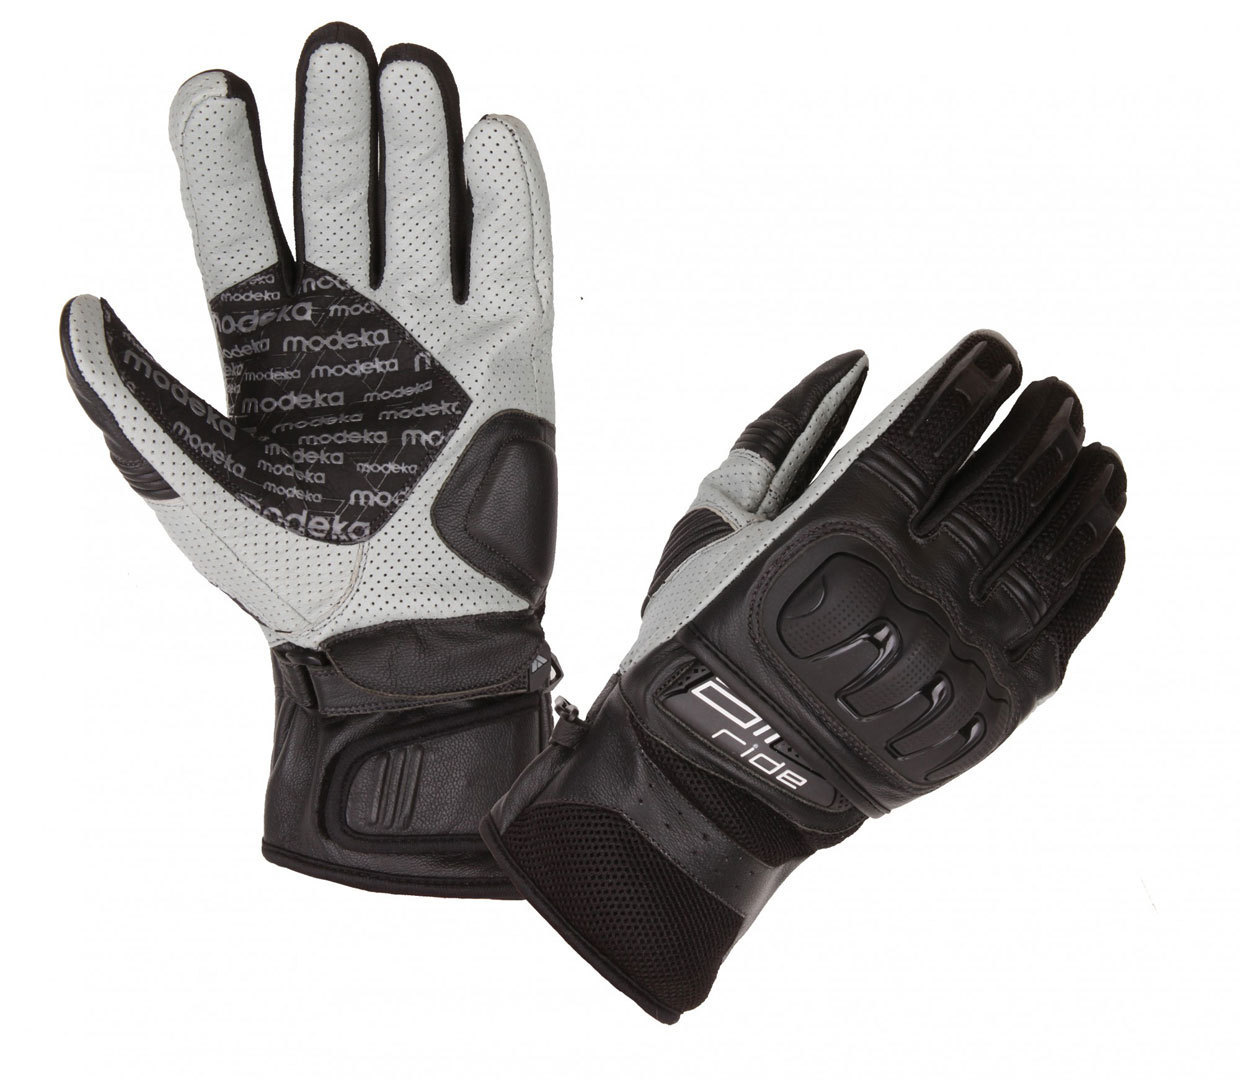 Modeka Air Ride Handschuhe, schwarz-weiss, Größe S M, schwarz-weiss, Größe S M